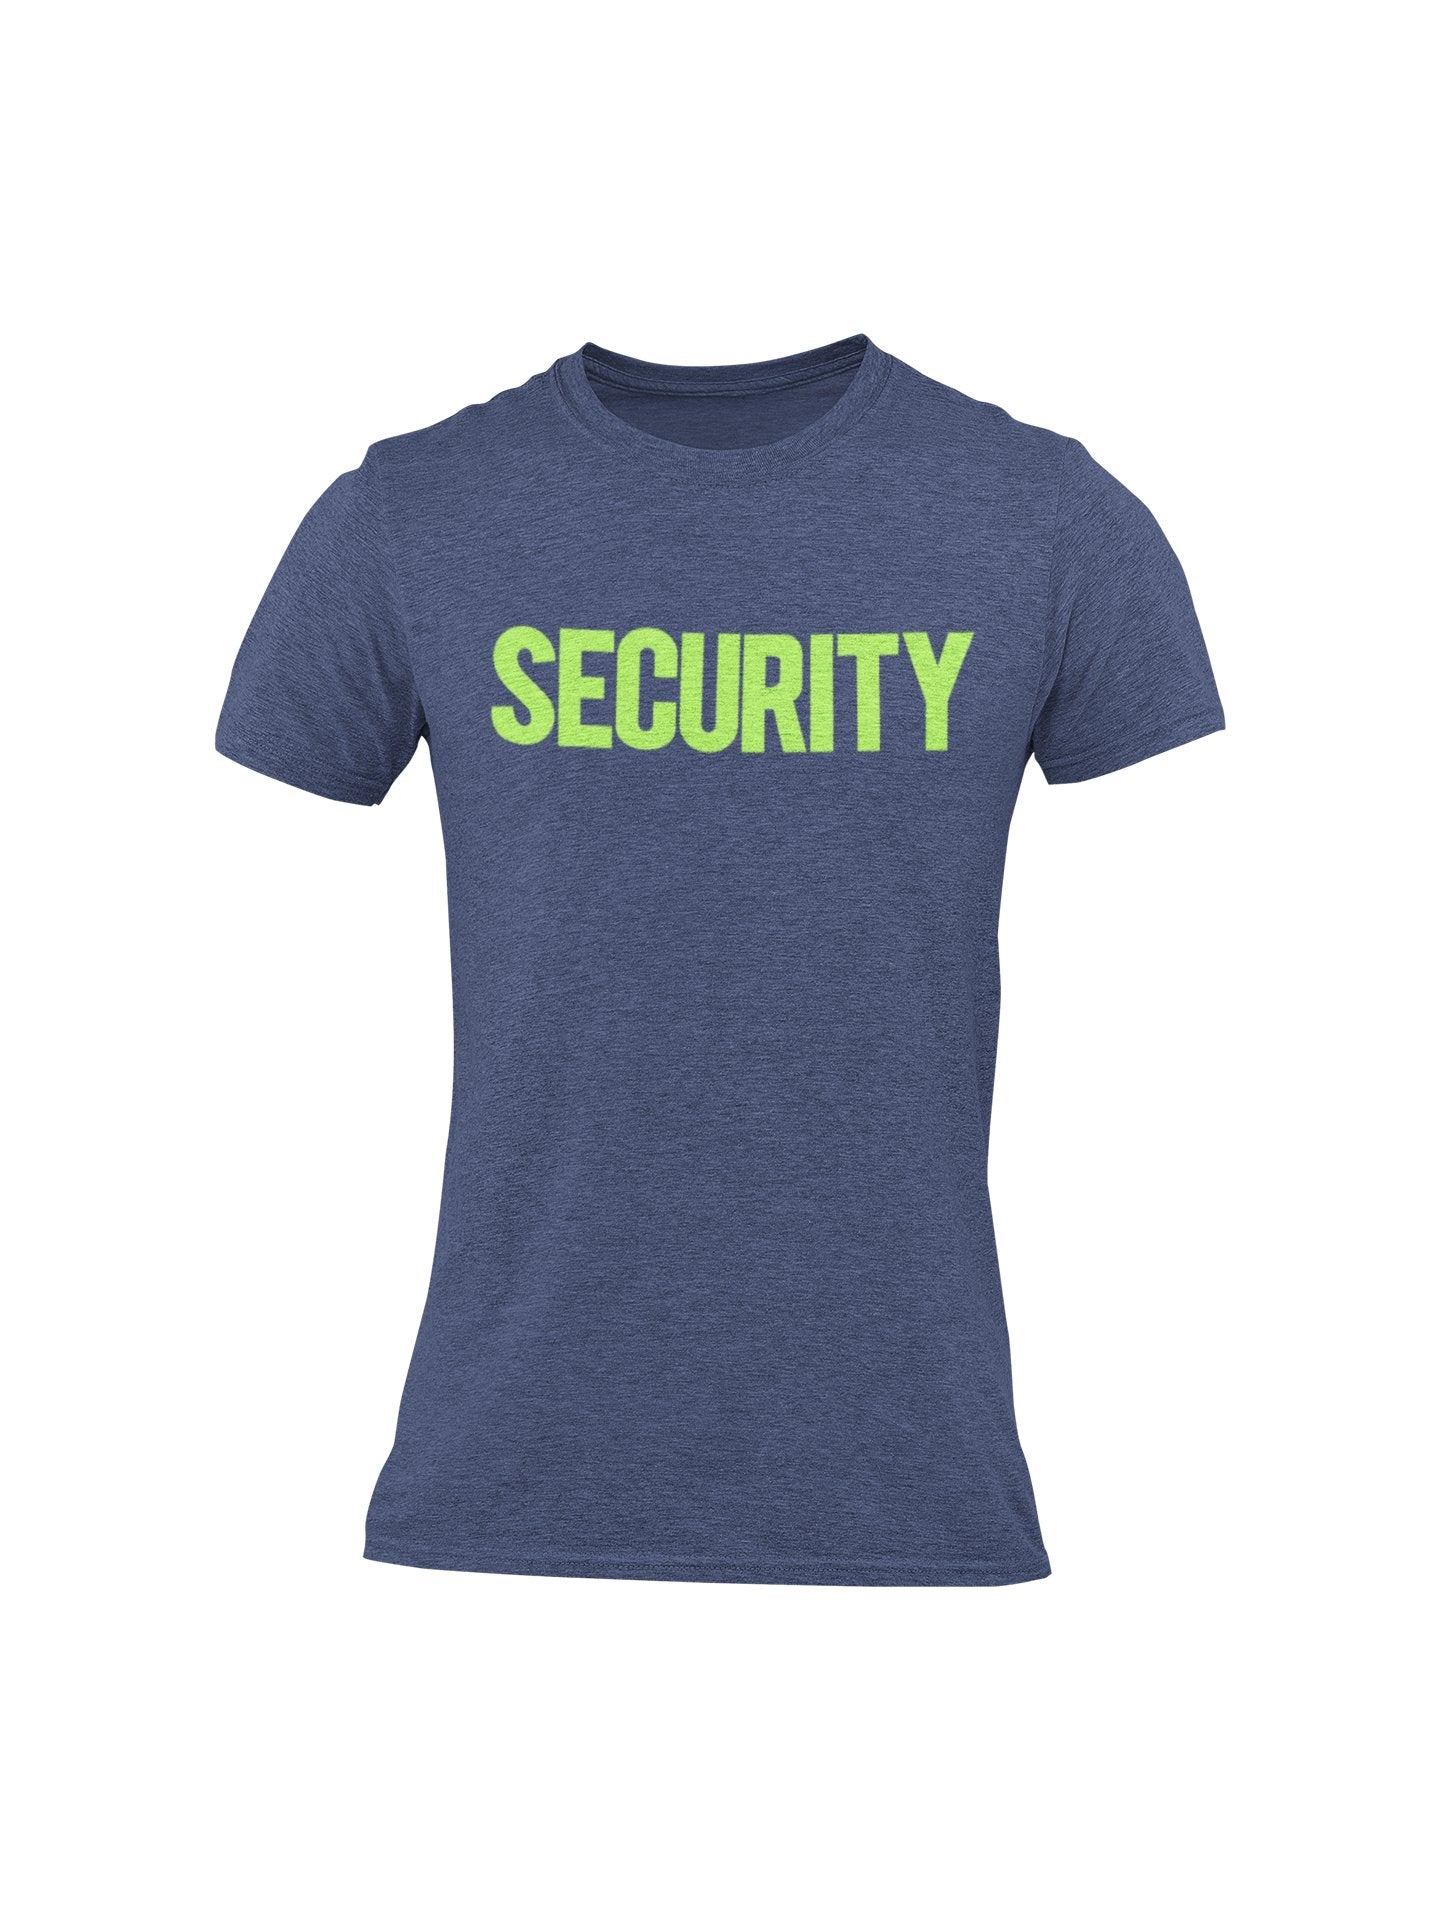 T-shirt de sécurité pour hommes (conception solide, imprimé avant et arrière, bleu marine chiné et néon)